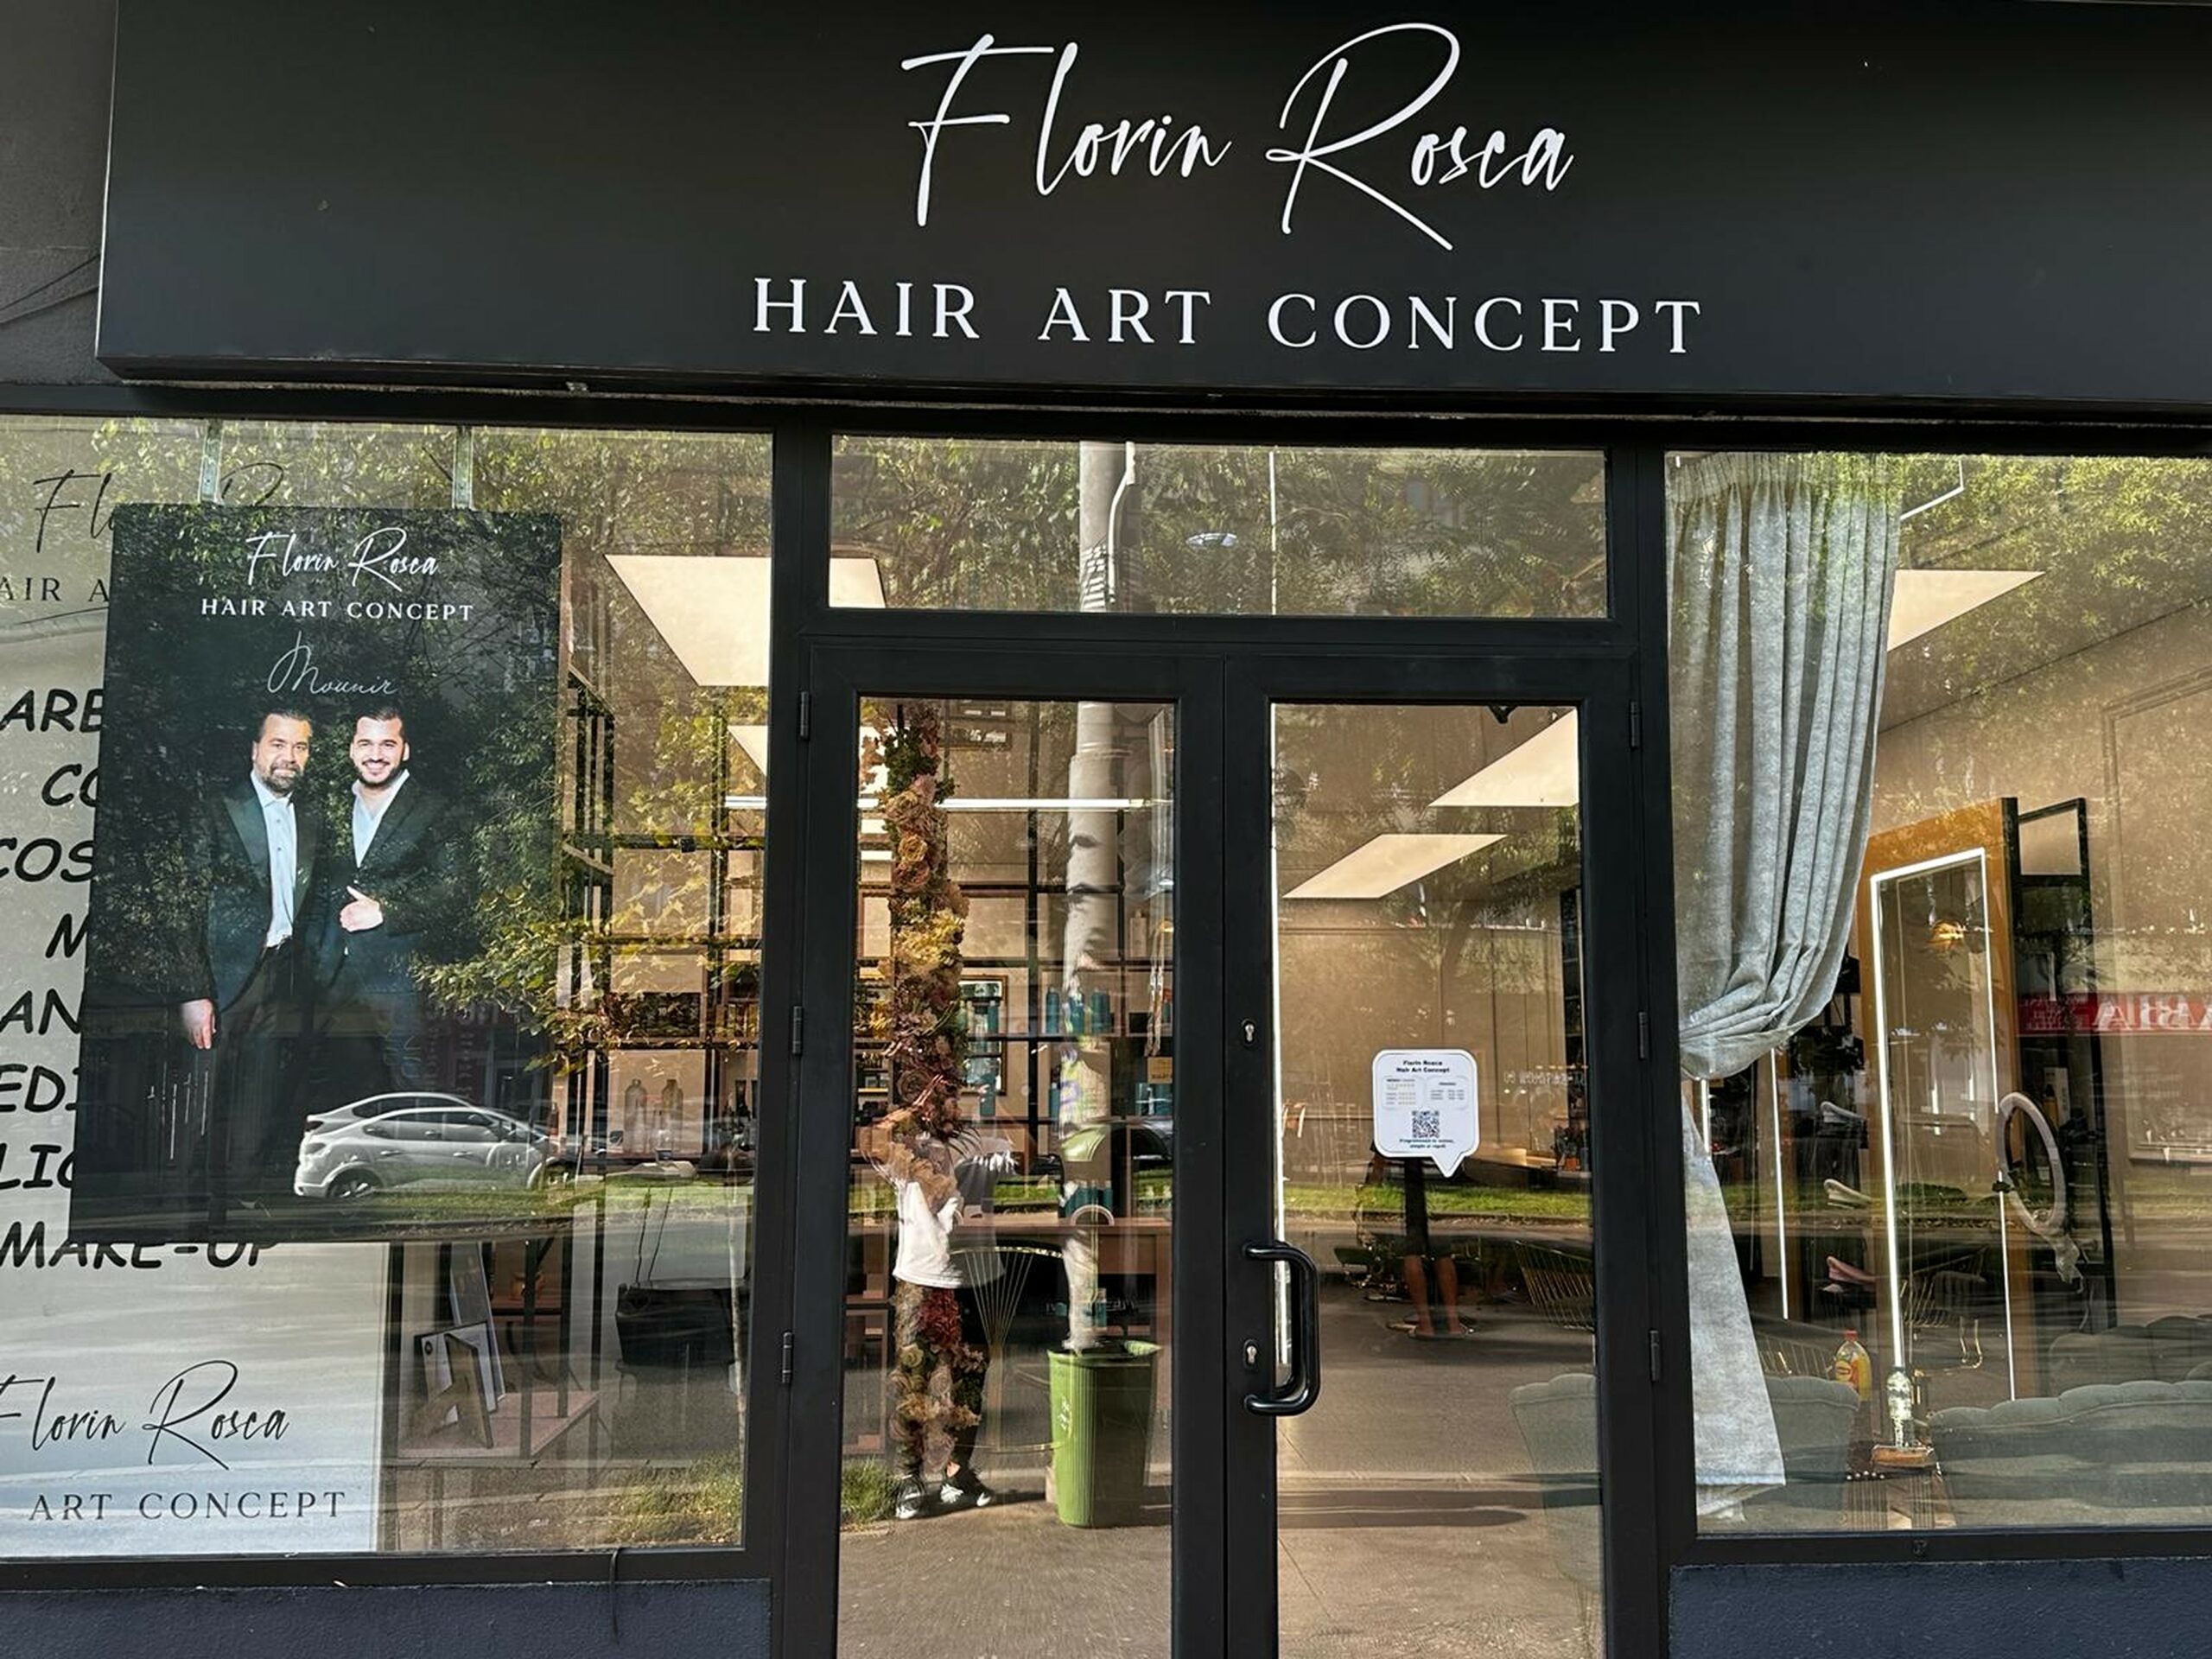 Picătura de business. Florin Roșca, zis și Mounir de România, face artă din păr